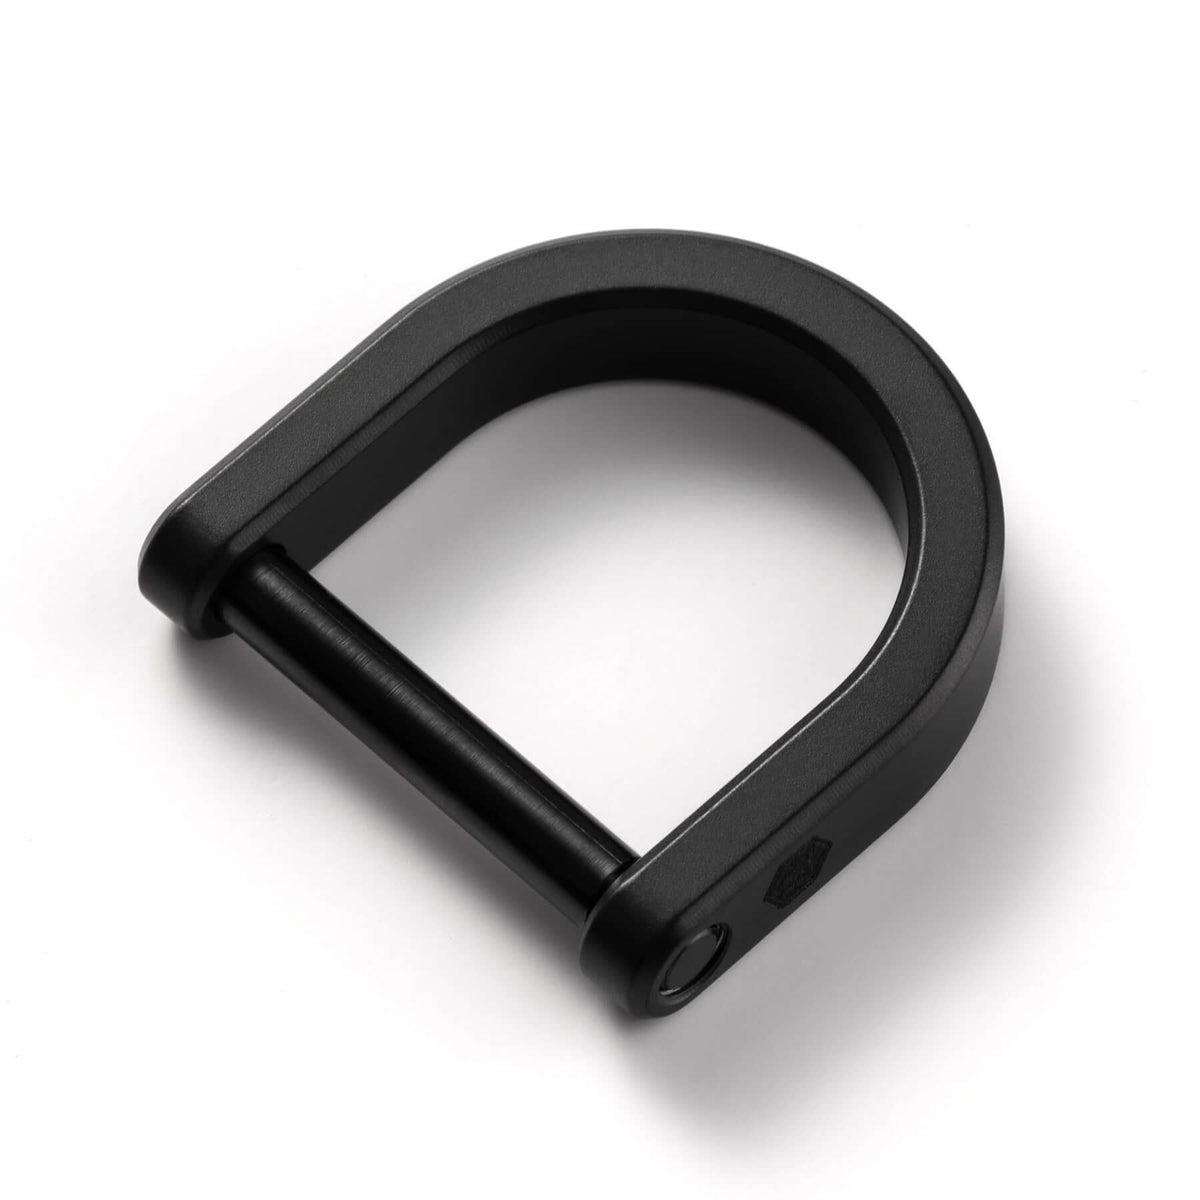 KA17 Titanium D Shaped Key Ring (BLACK)